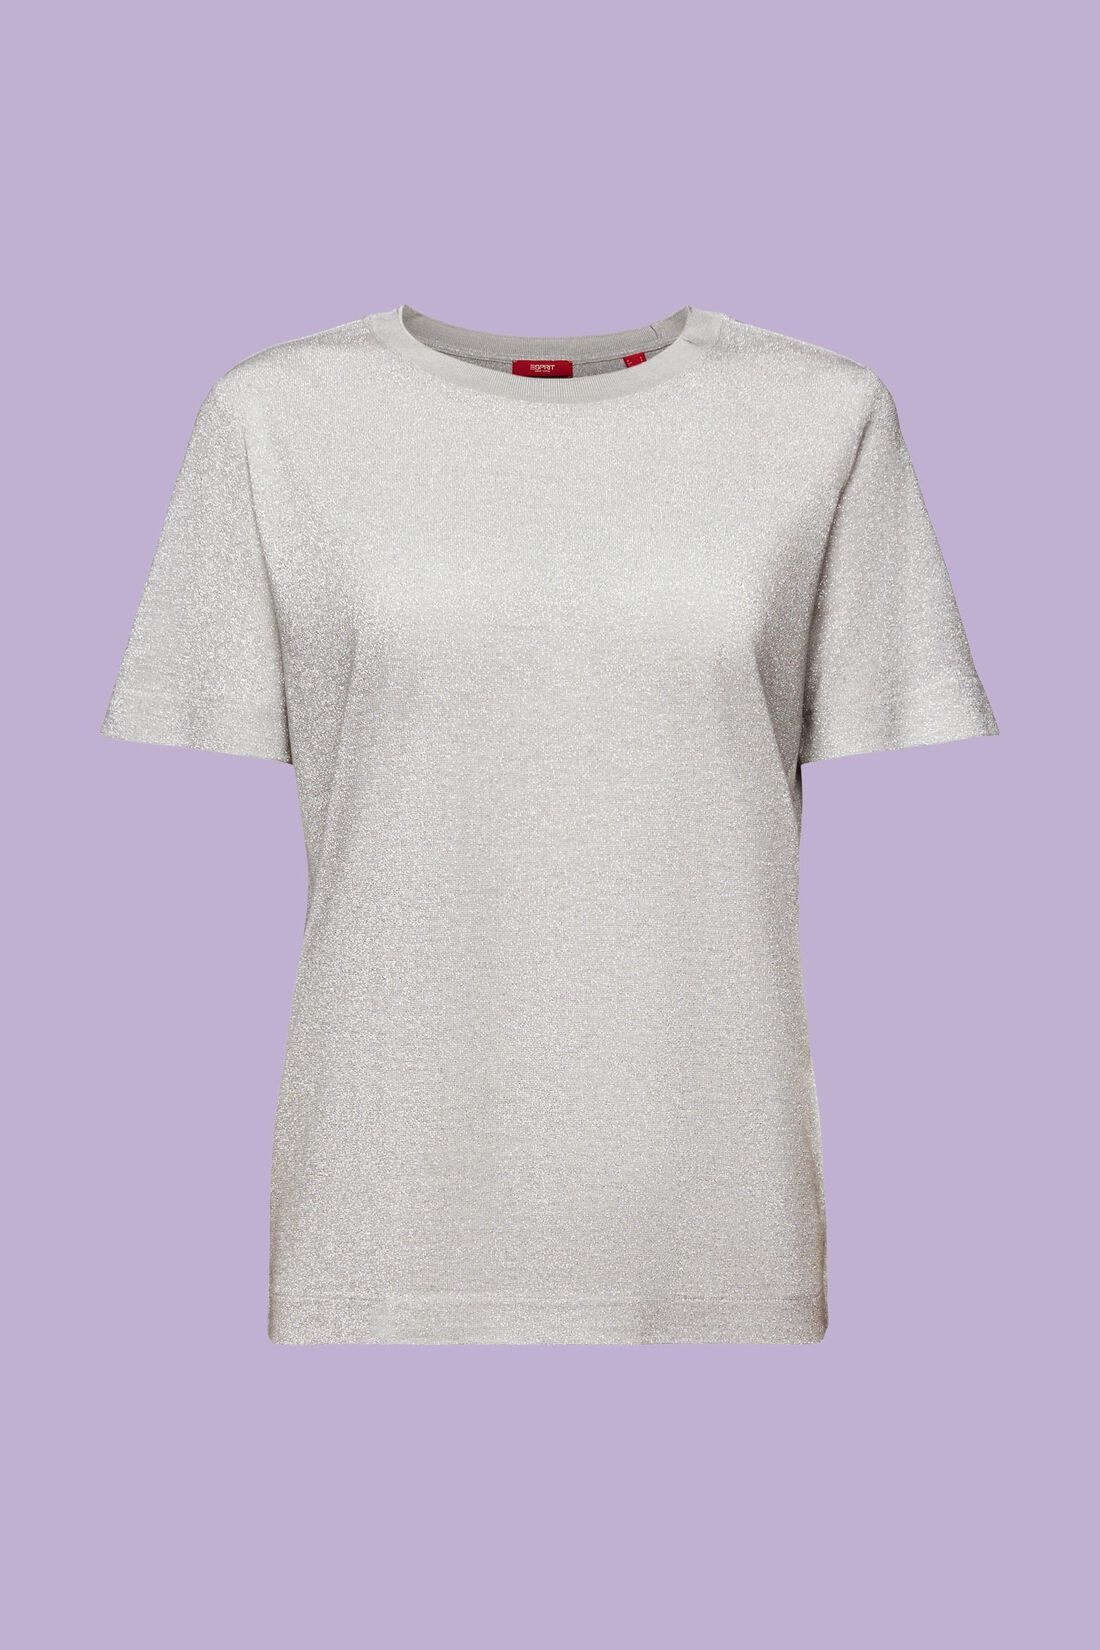 Esprit Lurex T-Shirt - Silver